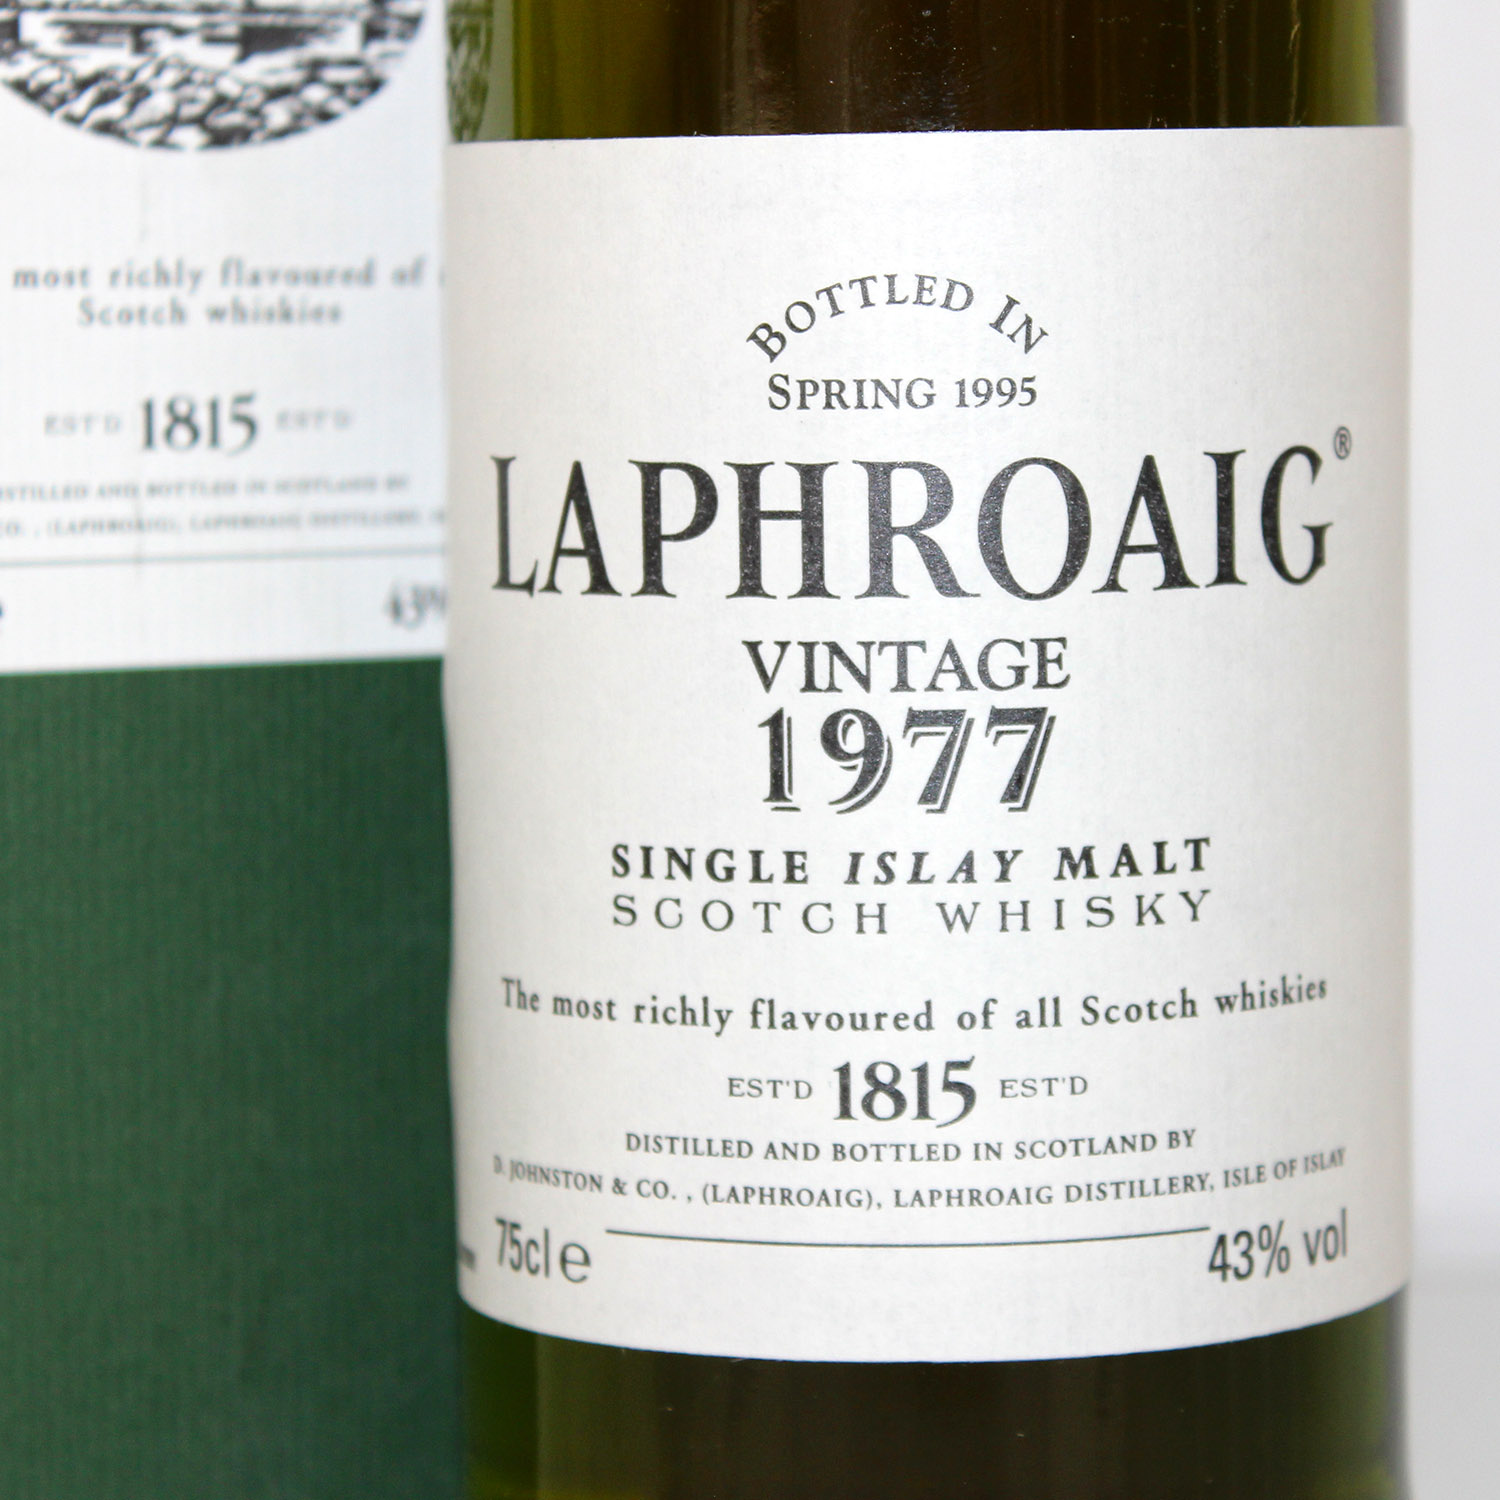 Laphroaig 1977 label